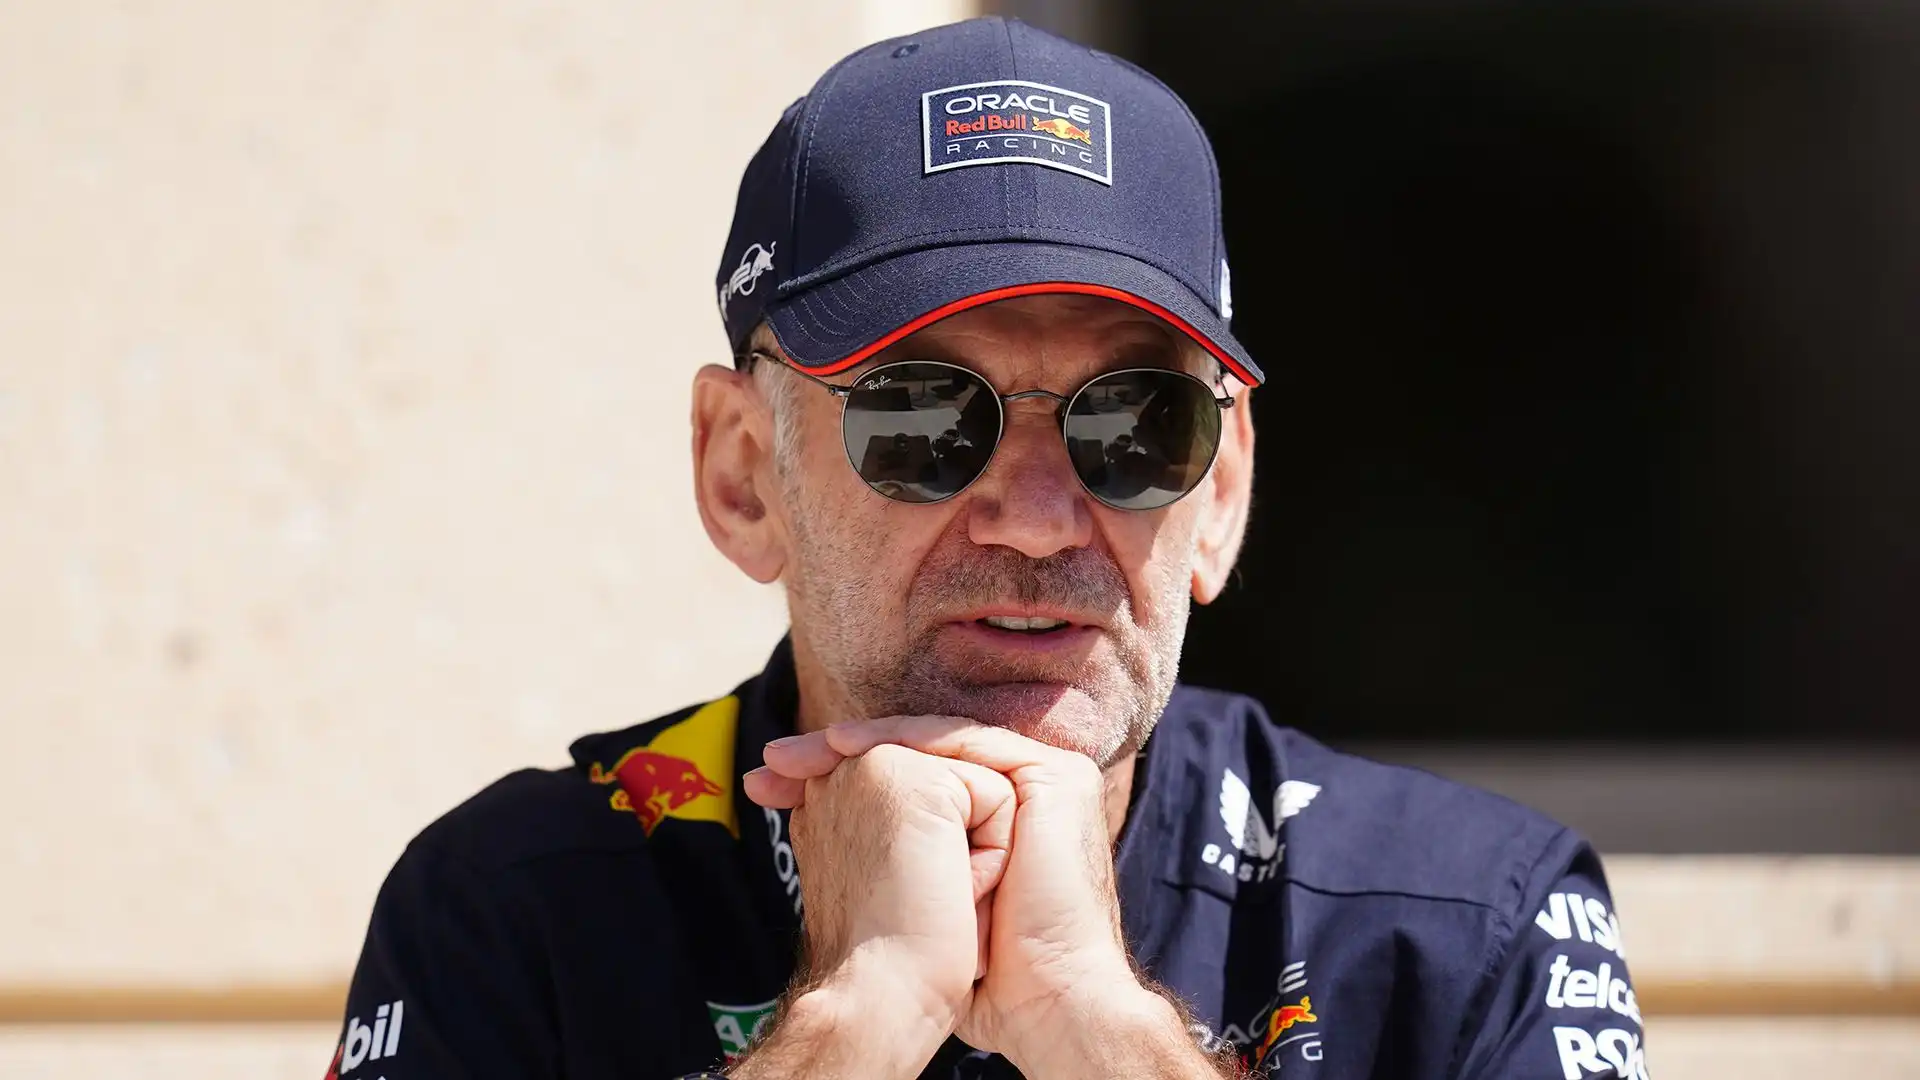 Da mesi si moltiplicano le voci sull'ingegnere inglese, che dopo anni di vittorie alla Red Bull potrebbe decidere di cambiare al termine dell'anno